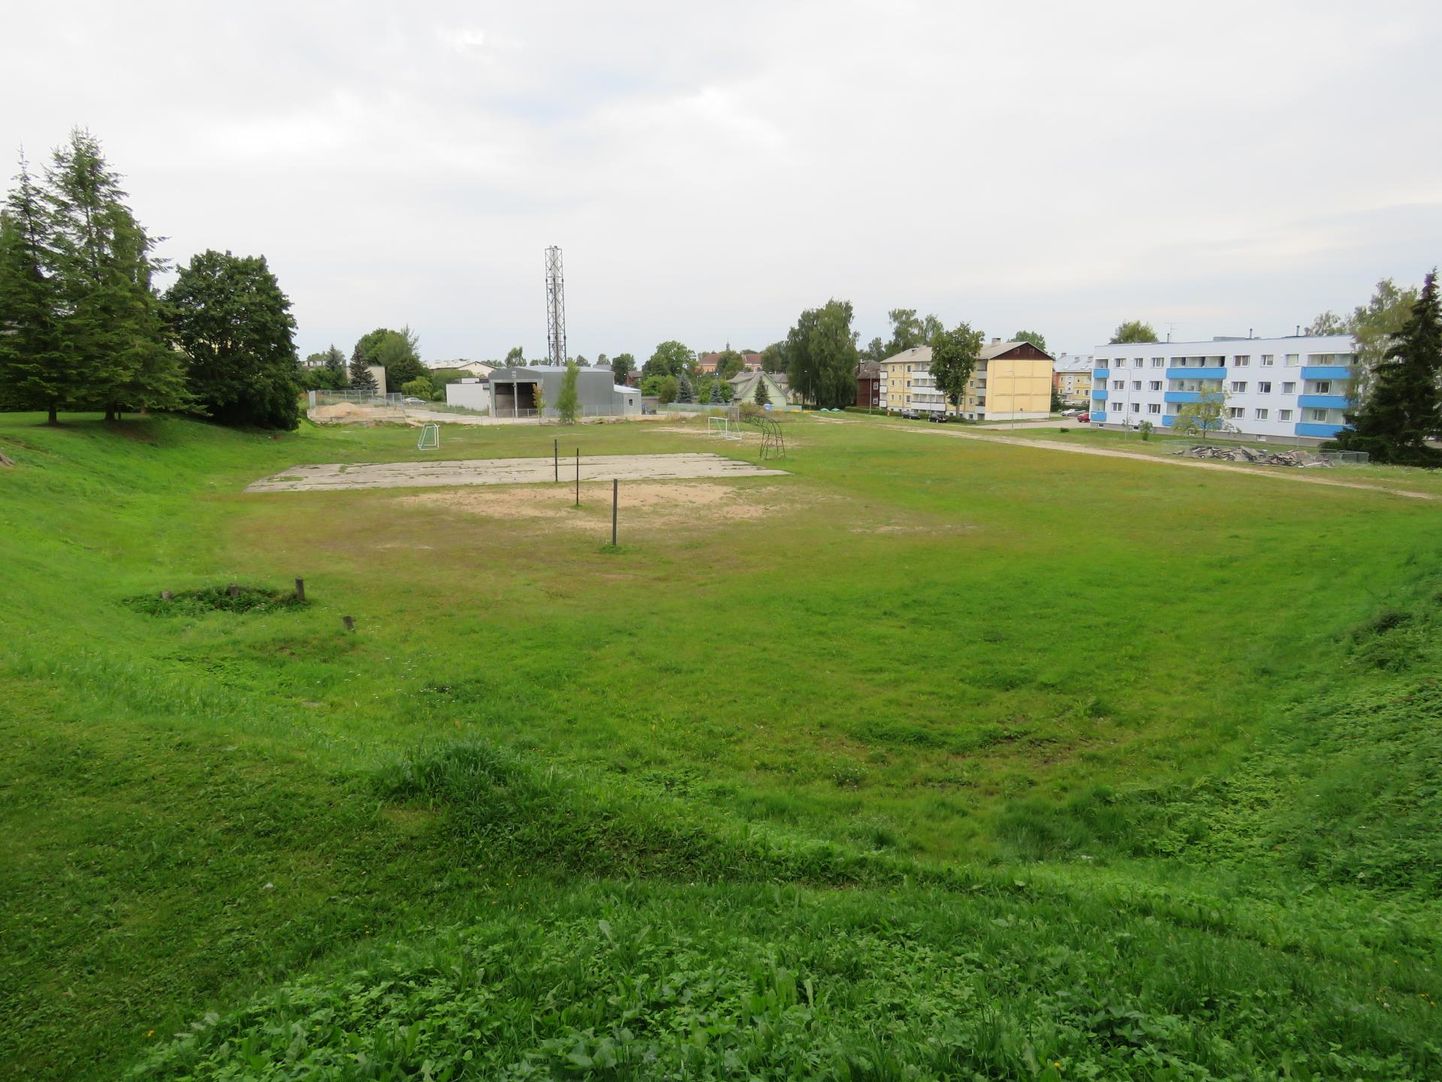 Just sellele platsile Otepää linnas on plaan rajada mitmeotstarbeline spordiväljak ehk puur.